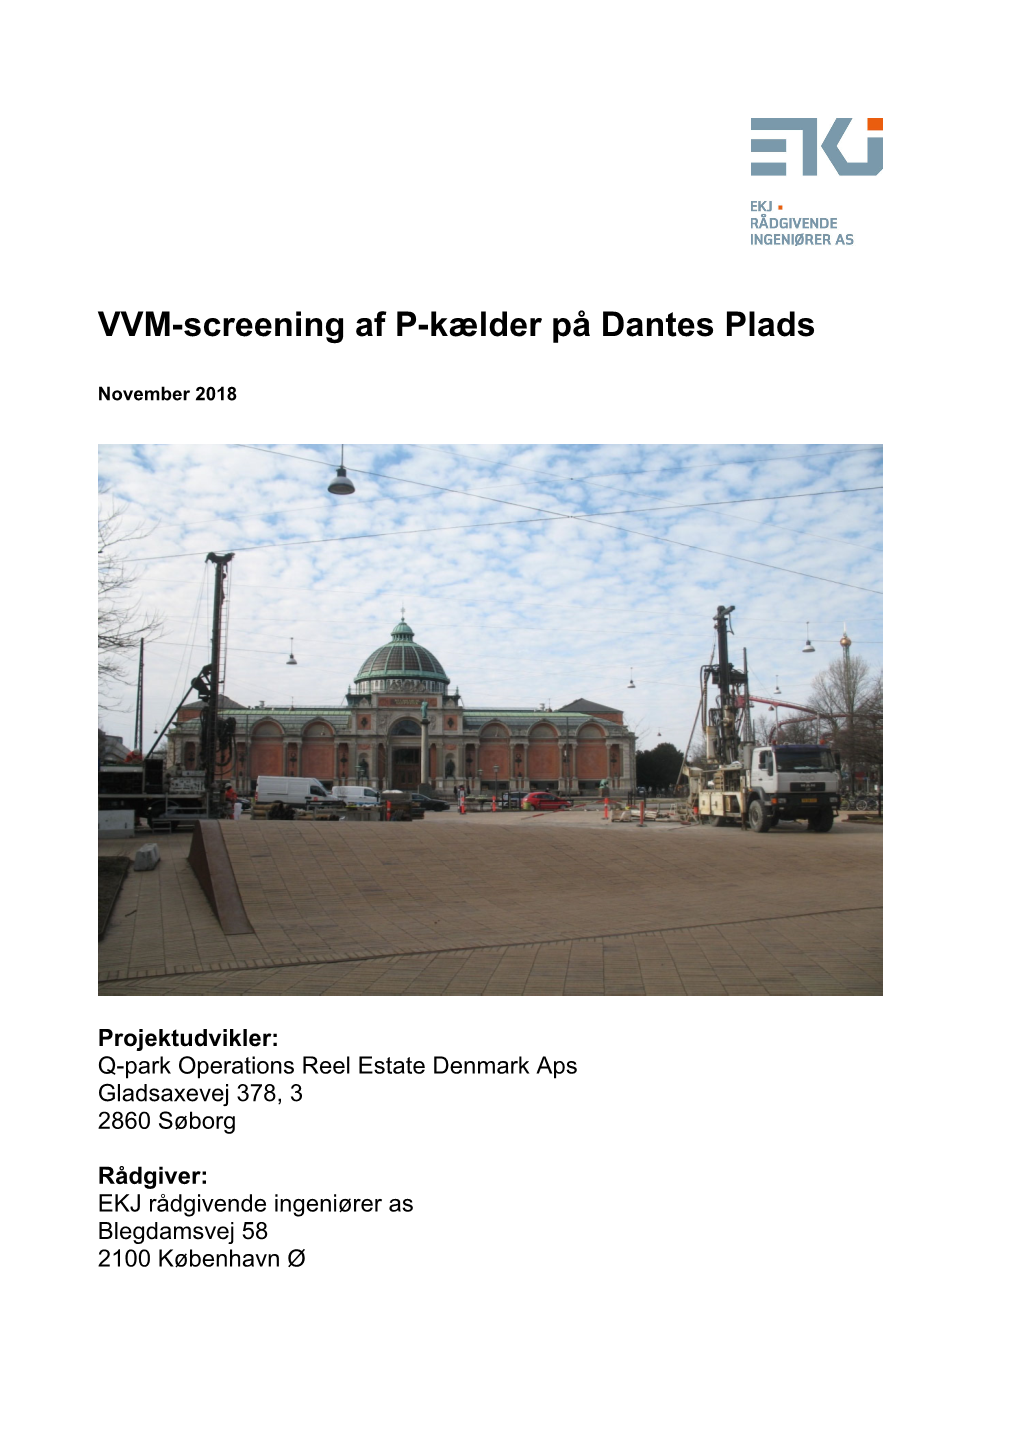 VVM-Screening Af P-Kælder På Dantes Plads